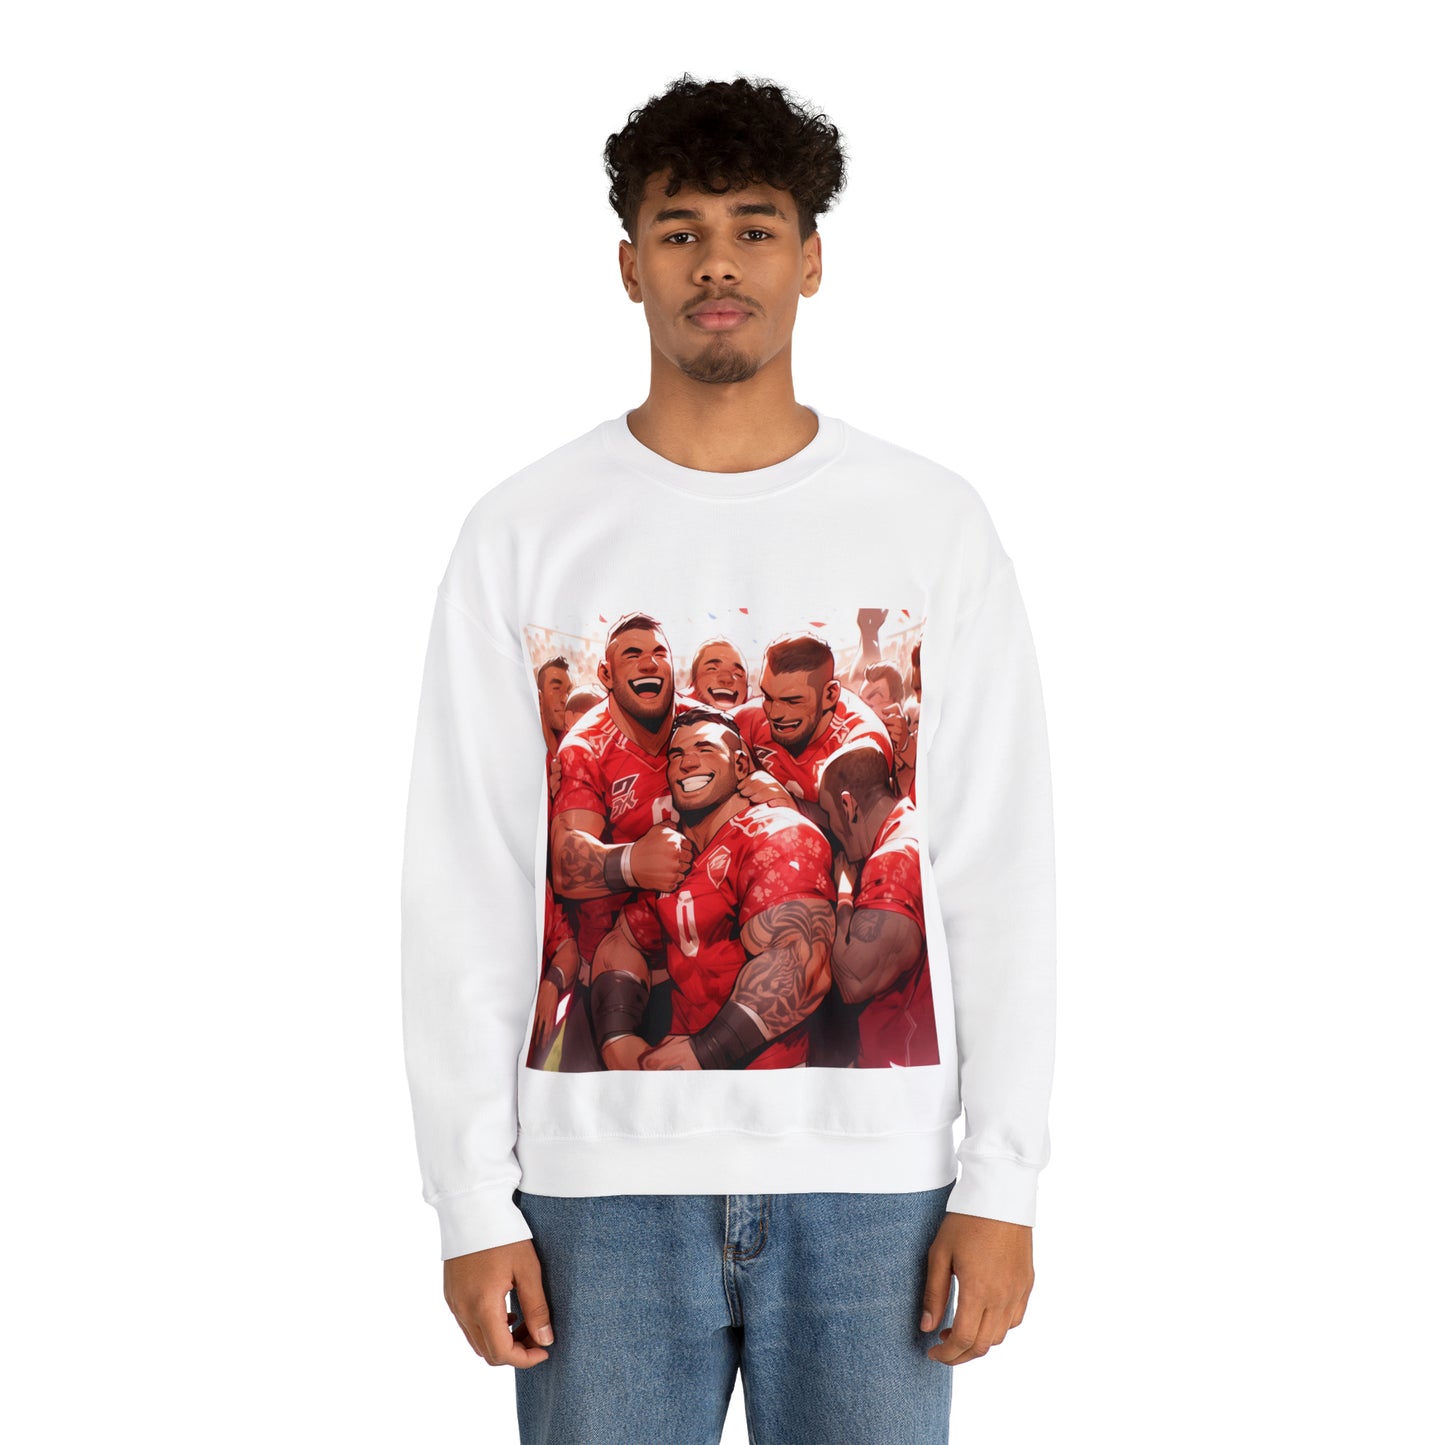 Happy Tonga - light sweatshirts